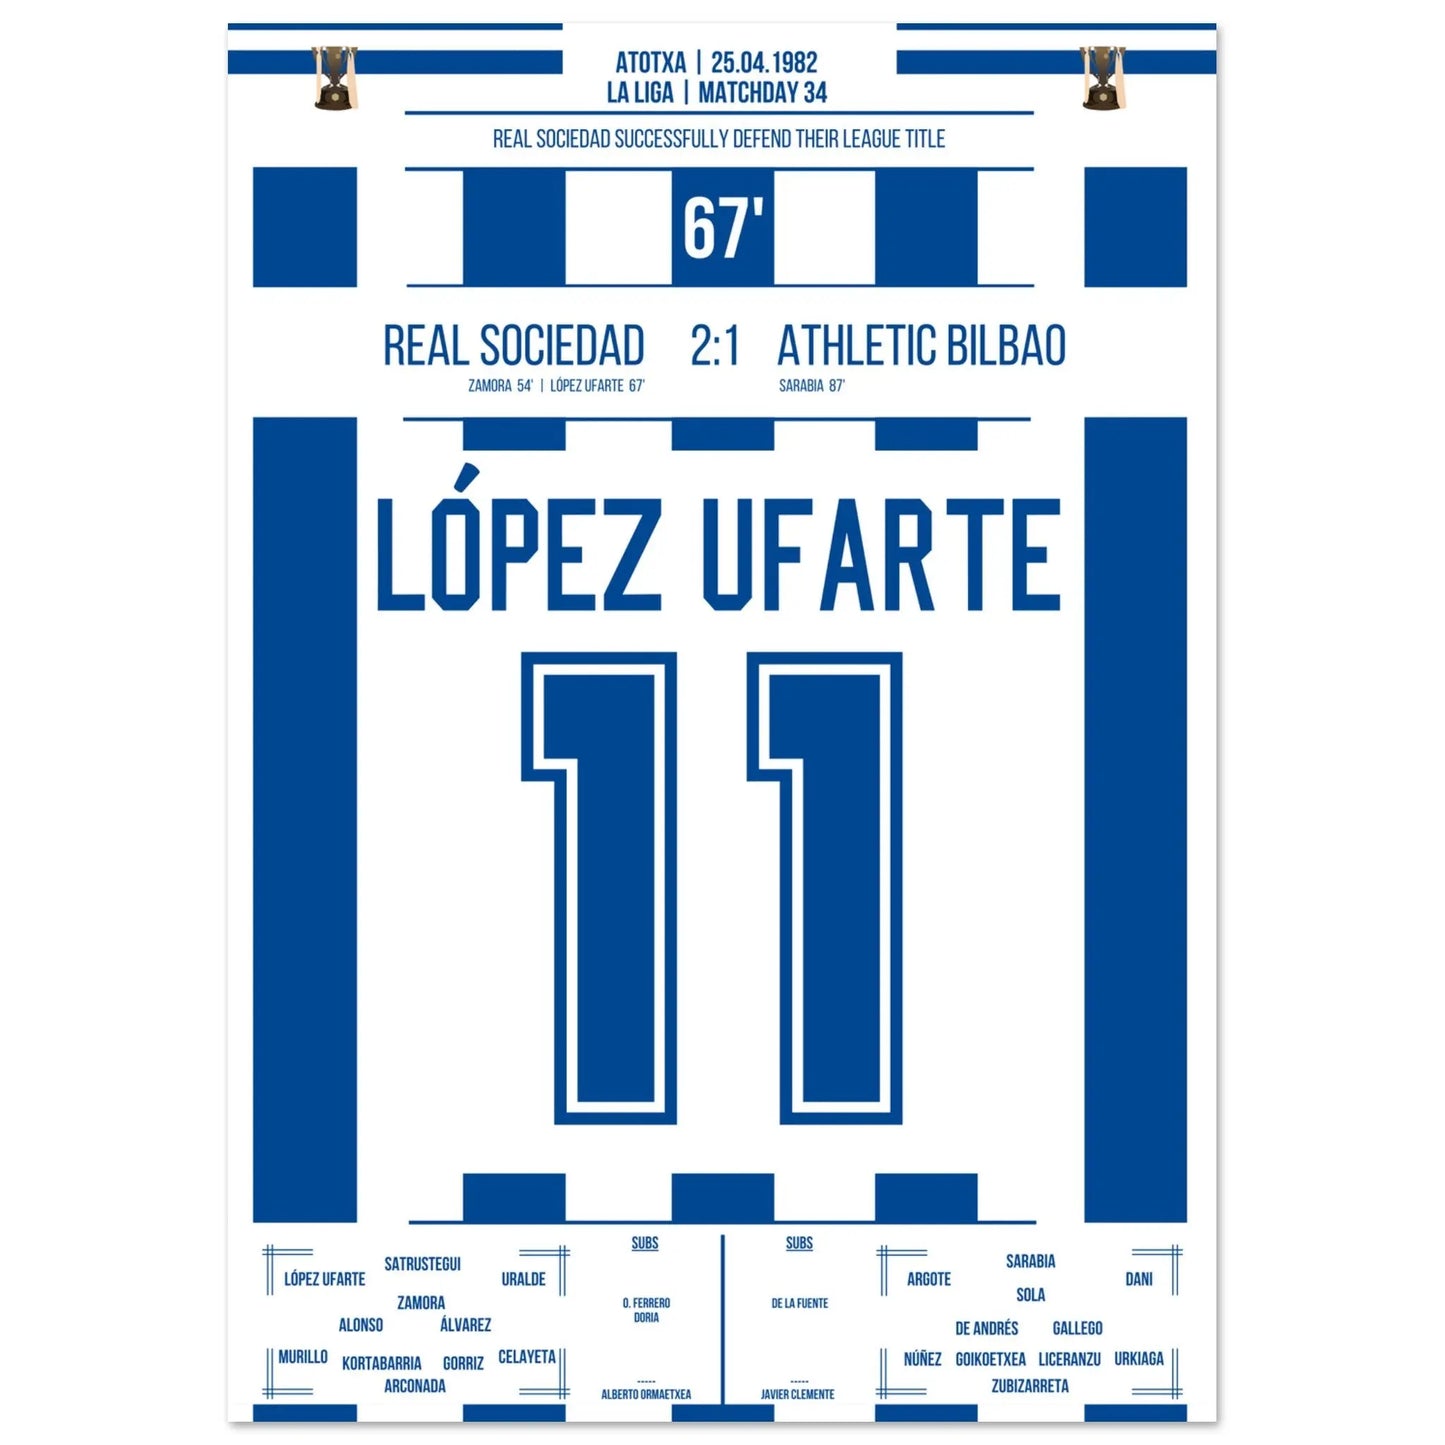 Het doel van López Ufarte om zijn titel in 1982 te verdedigen